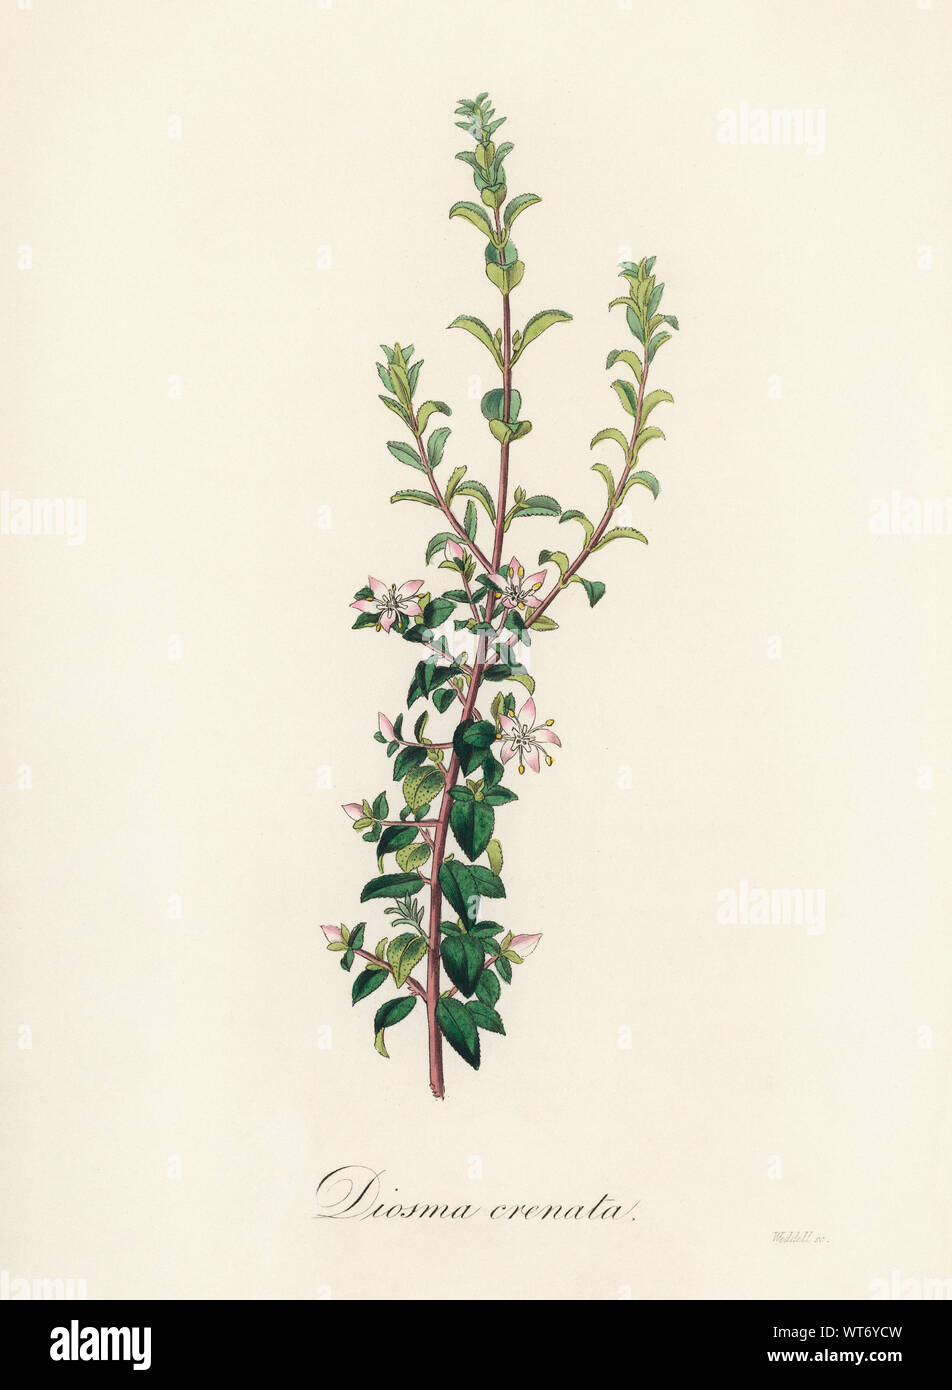 A Plant Diosma Crenata - Watercolor Print 19th Century Stock Photo